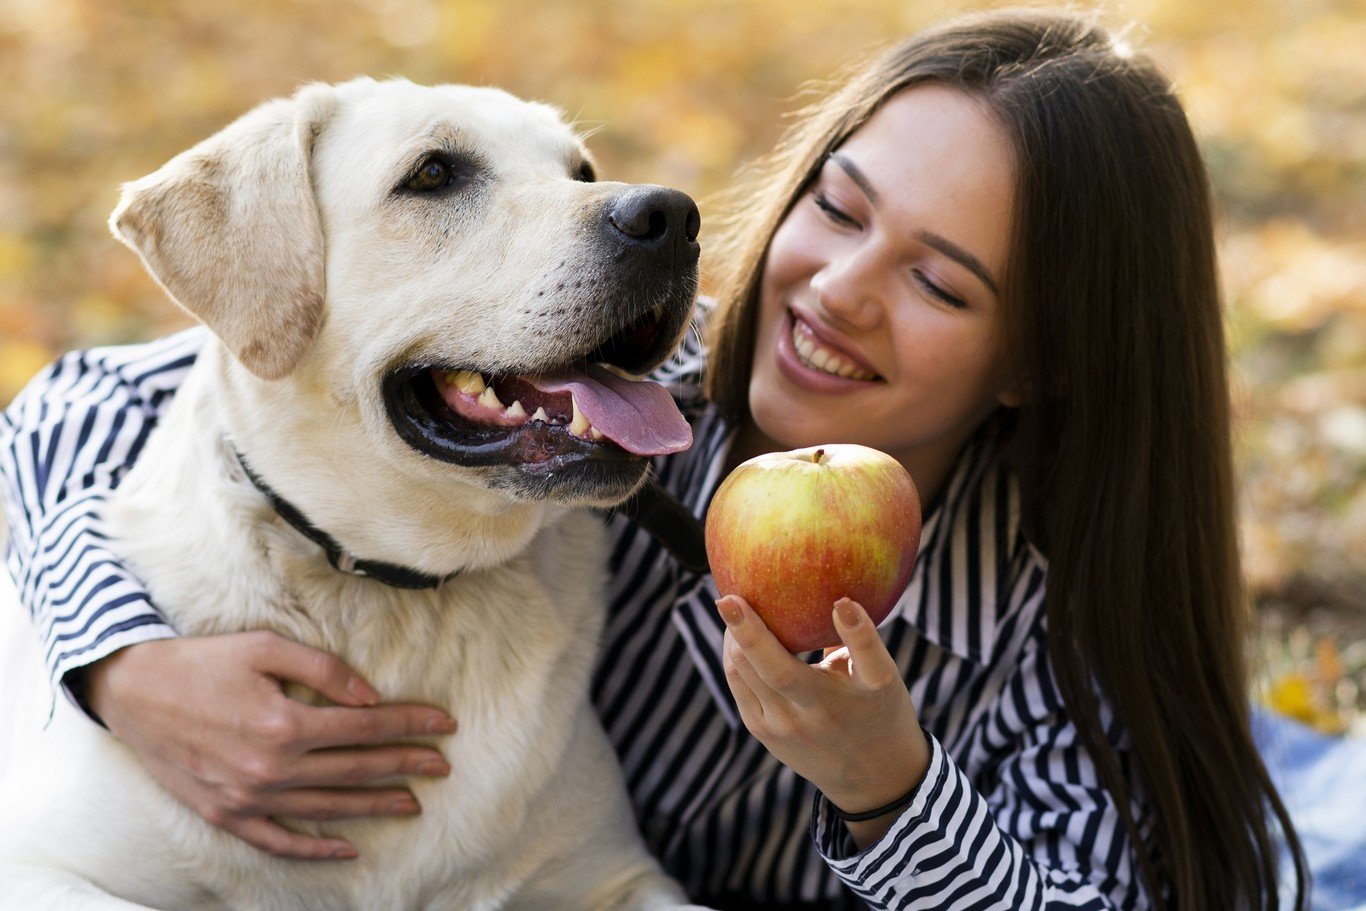 Fruites que poden menjar gossos i gats aquesta tardor